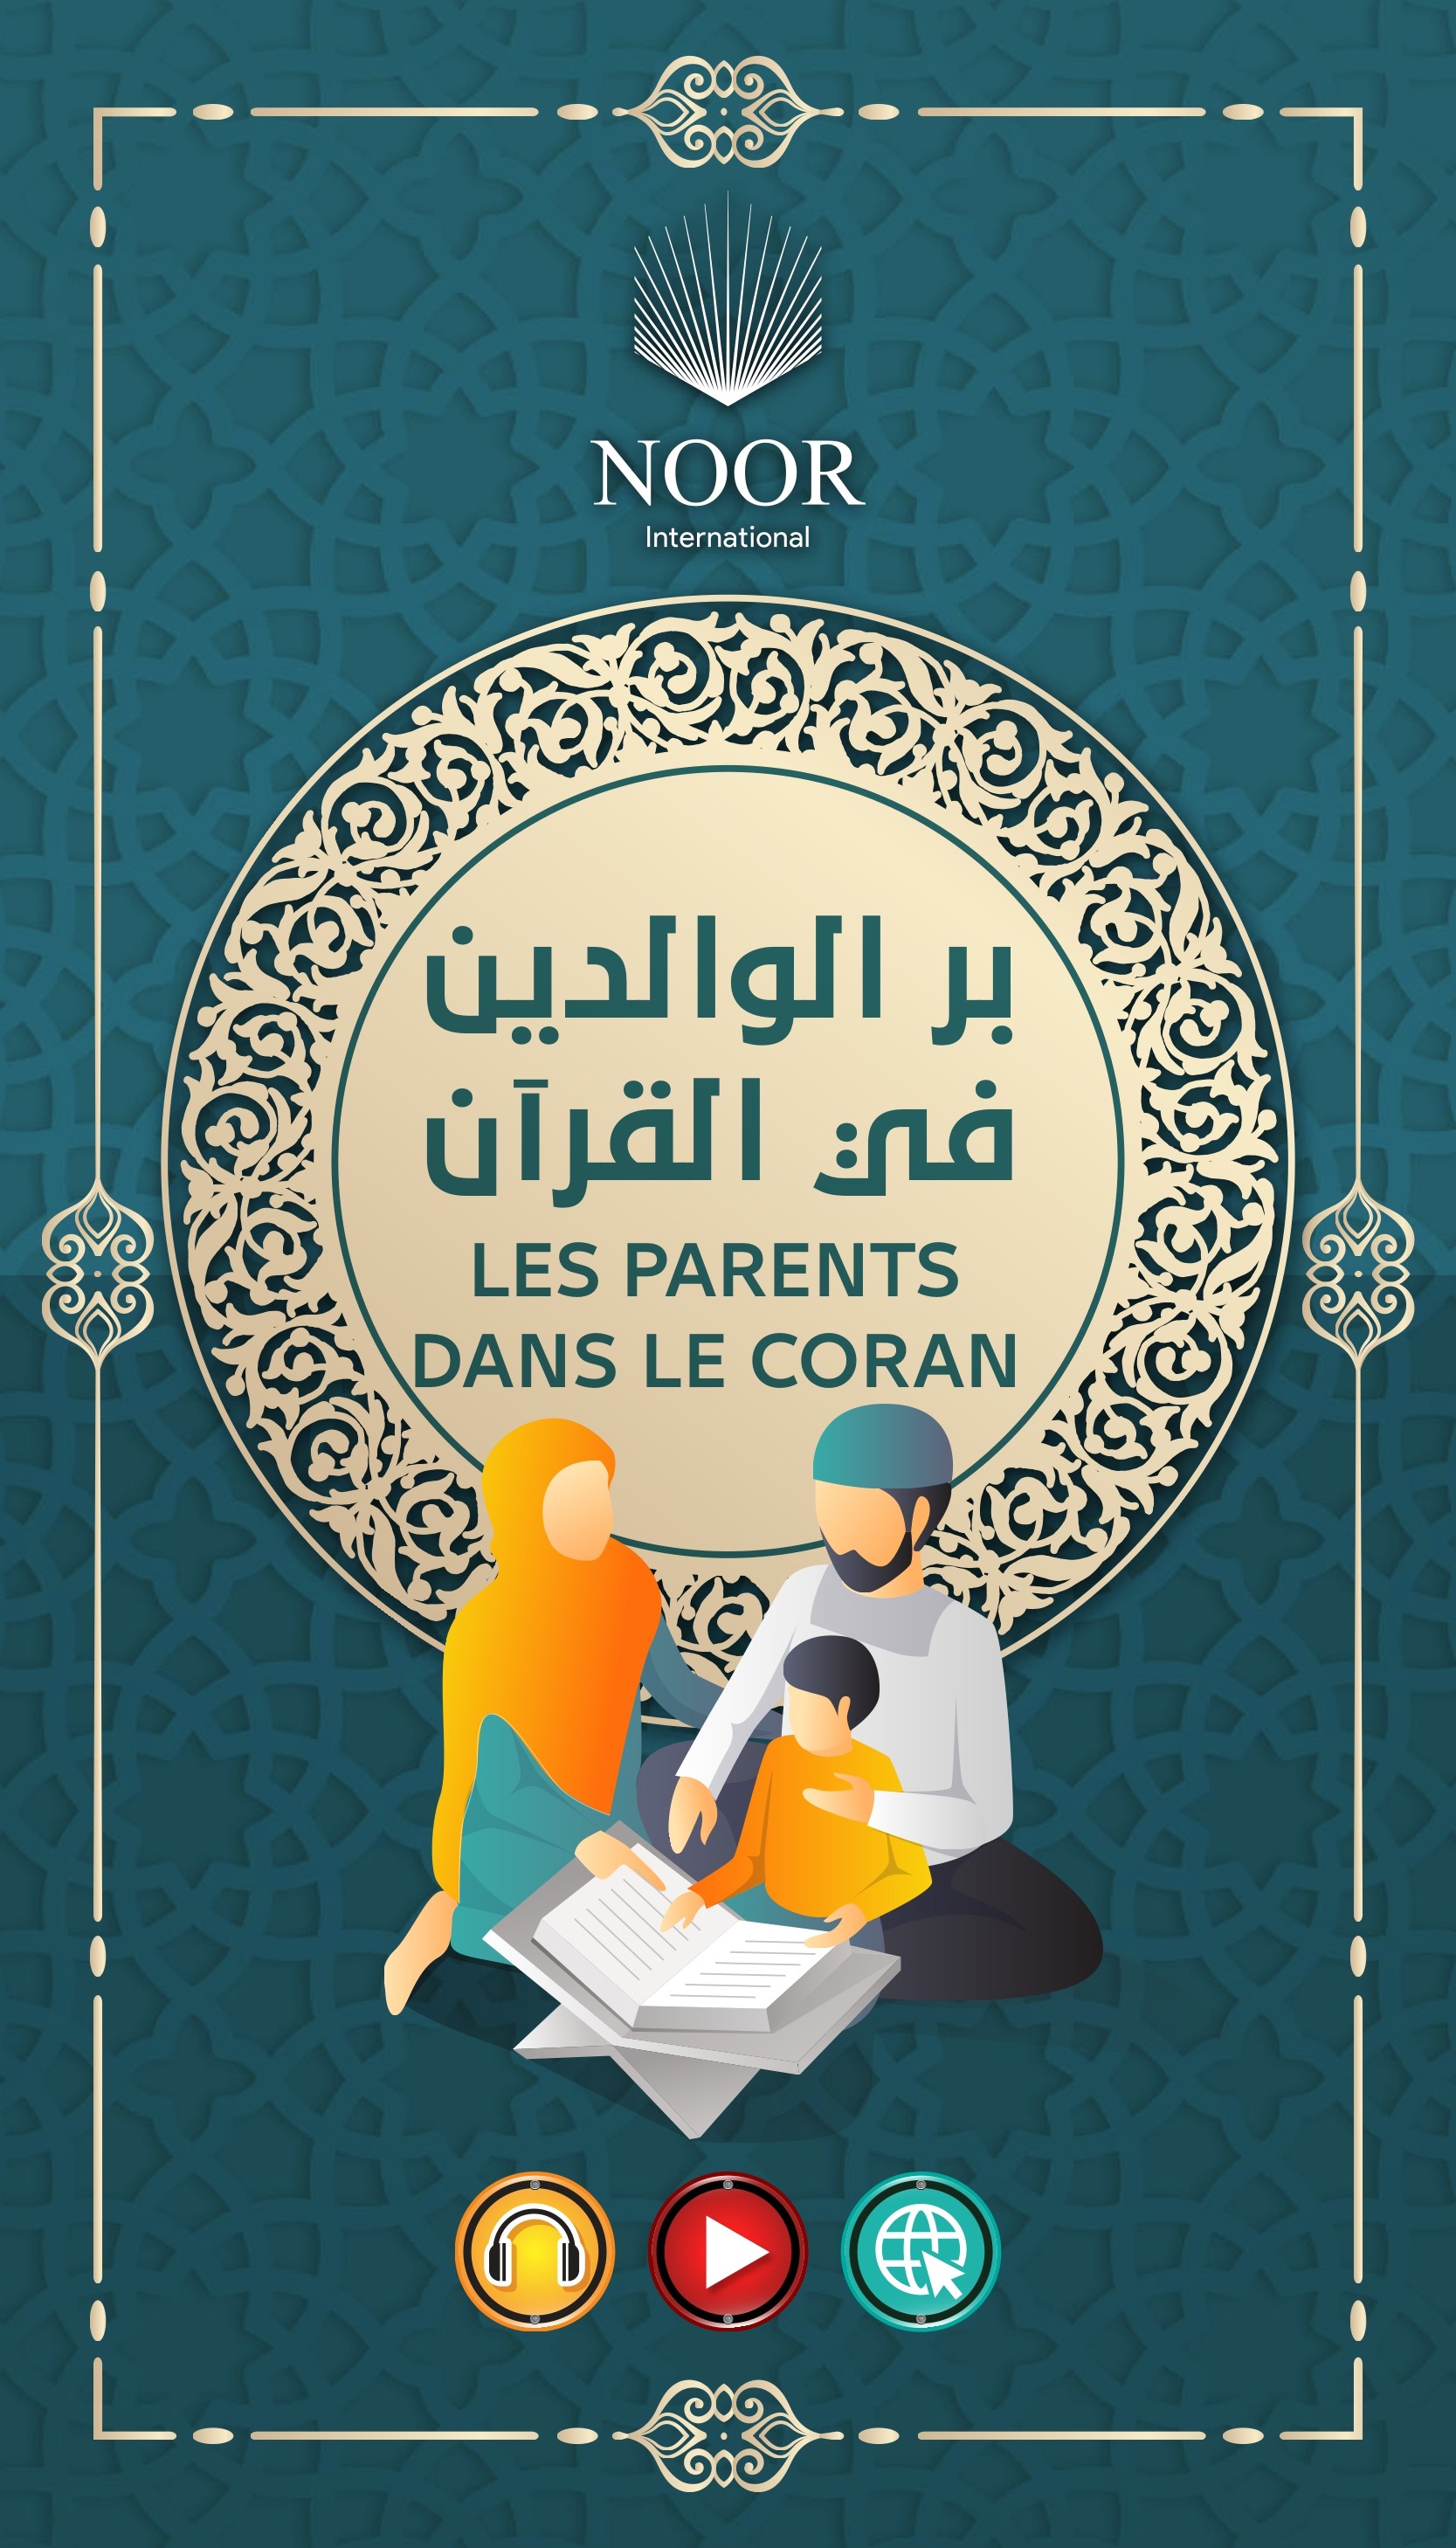 Parents dans le Coran